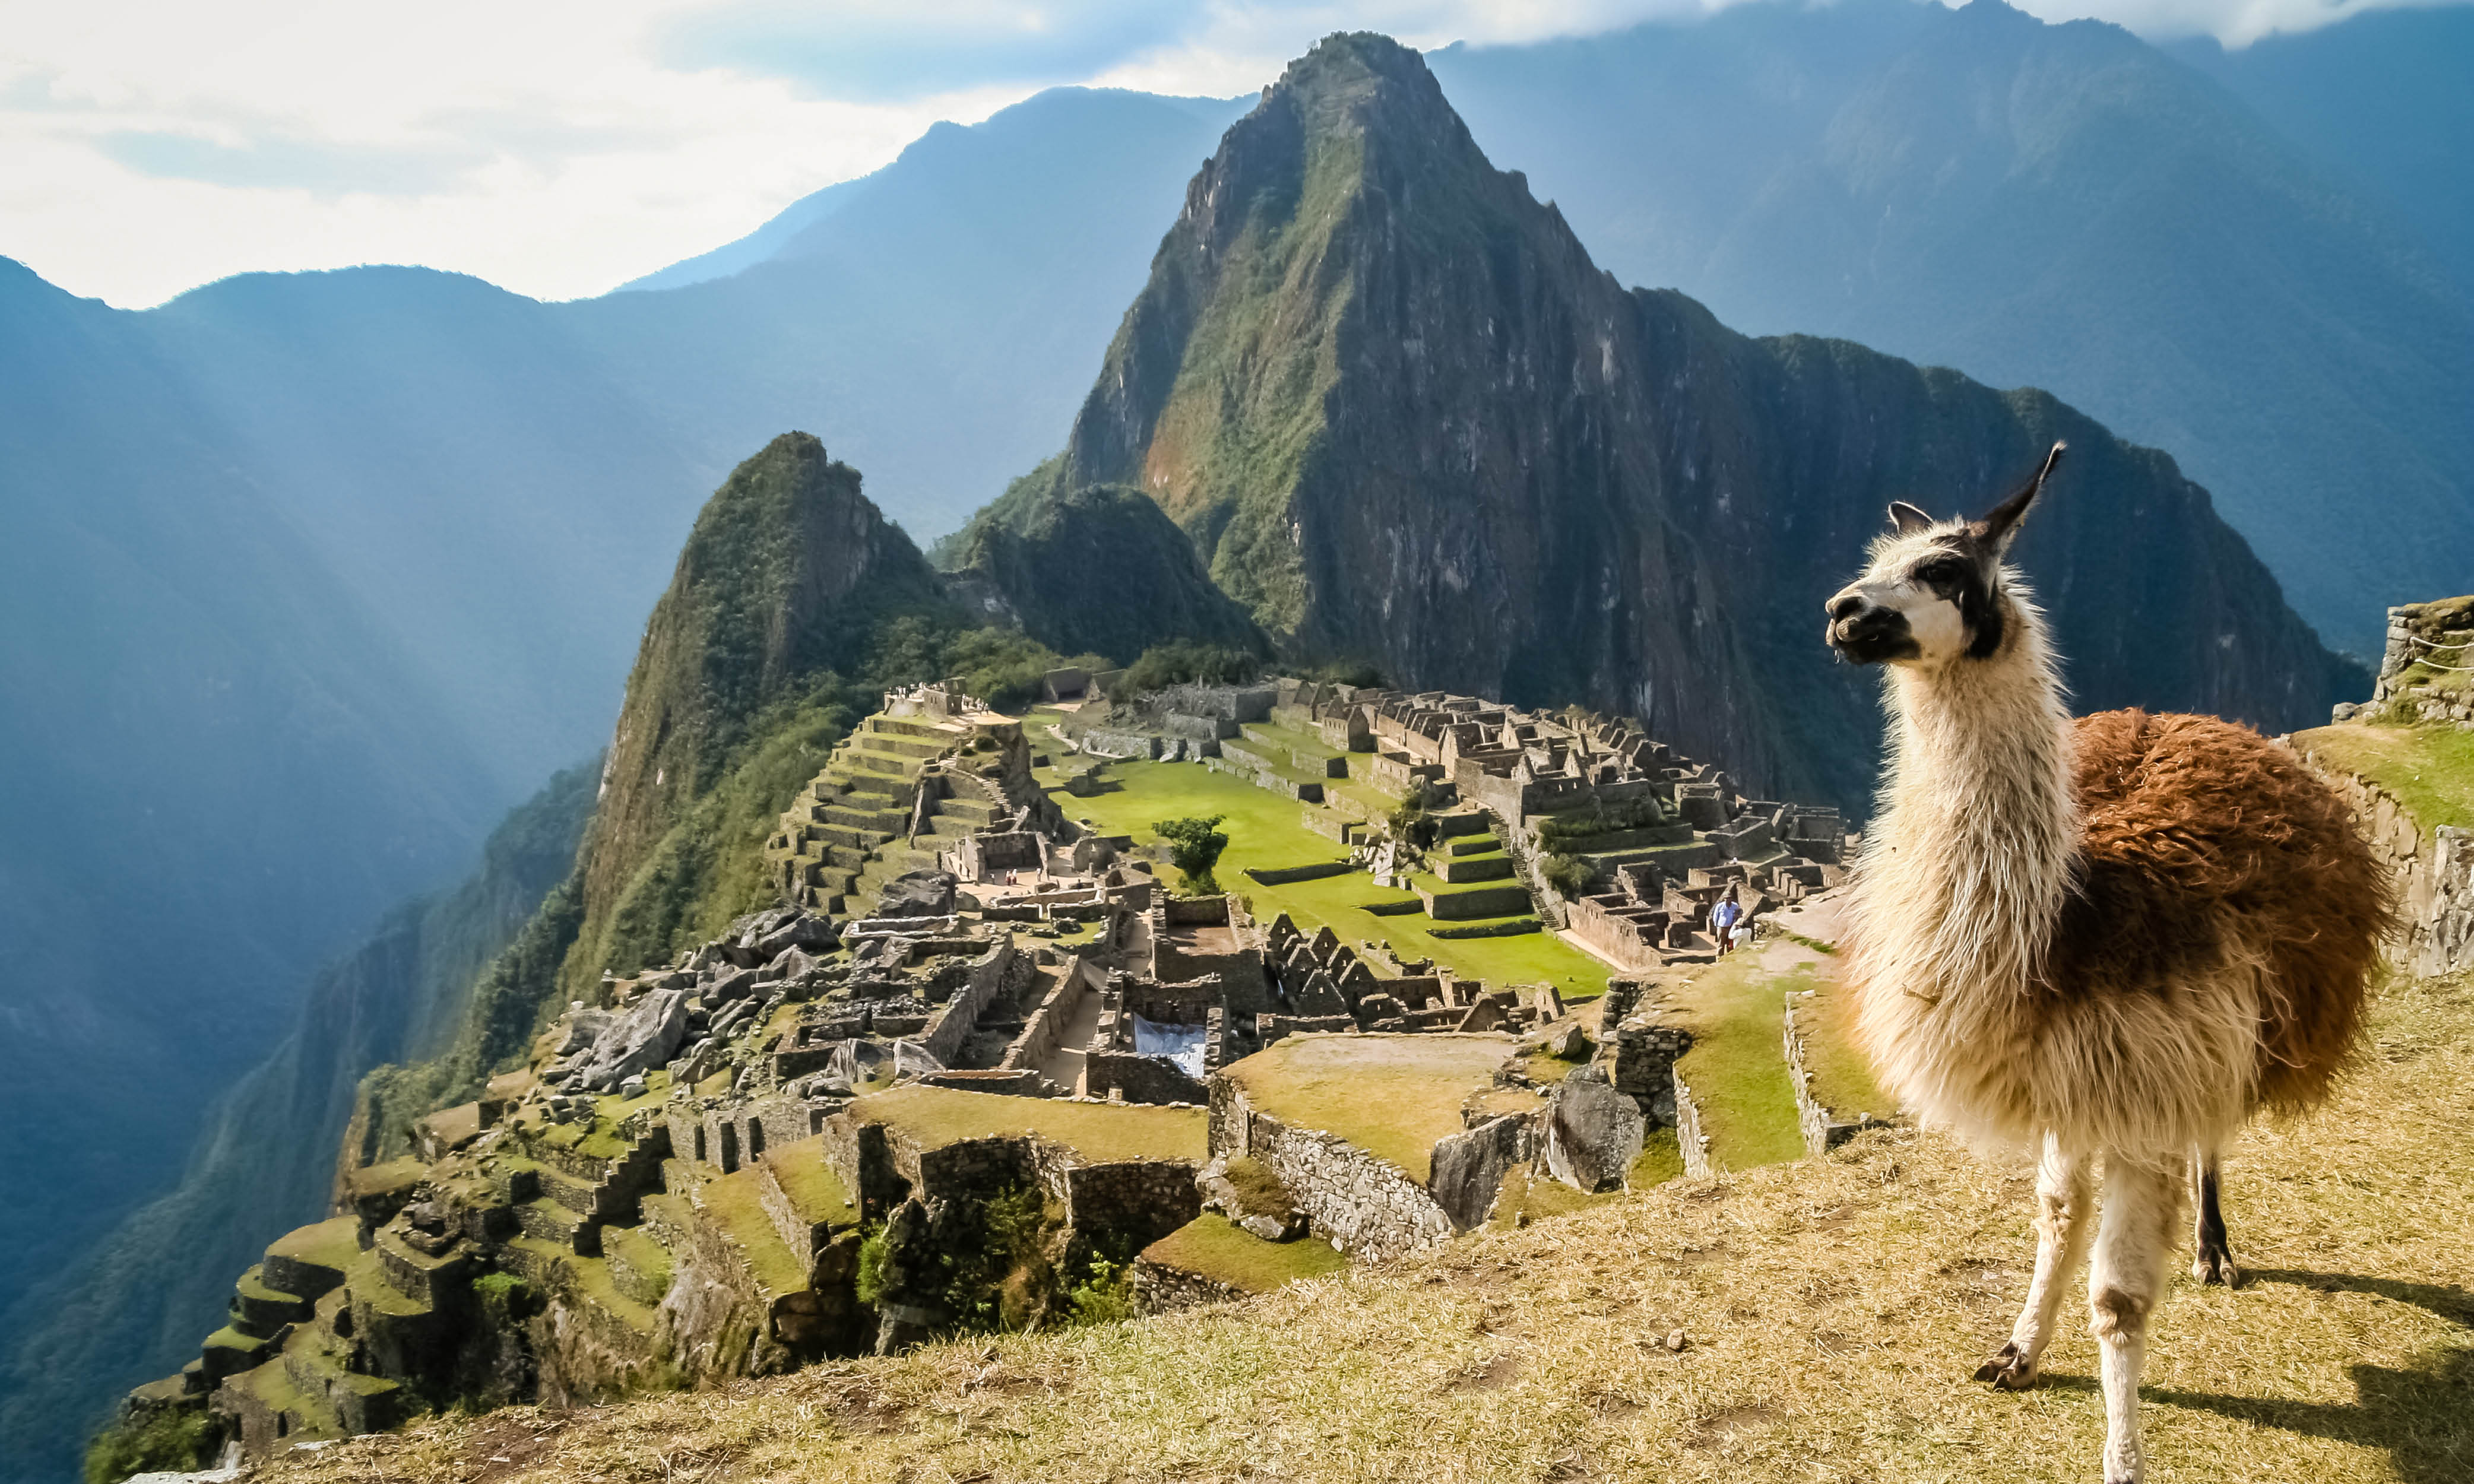 Peru: Lima, Cusco and the Inca Trail